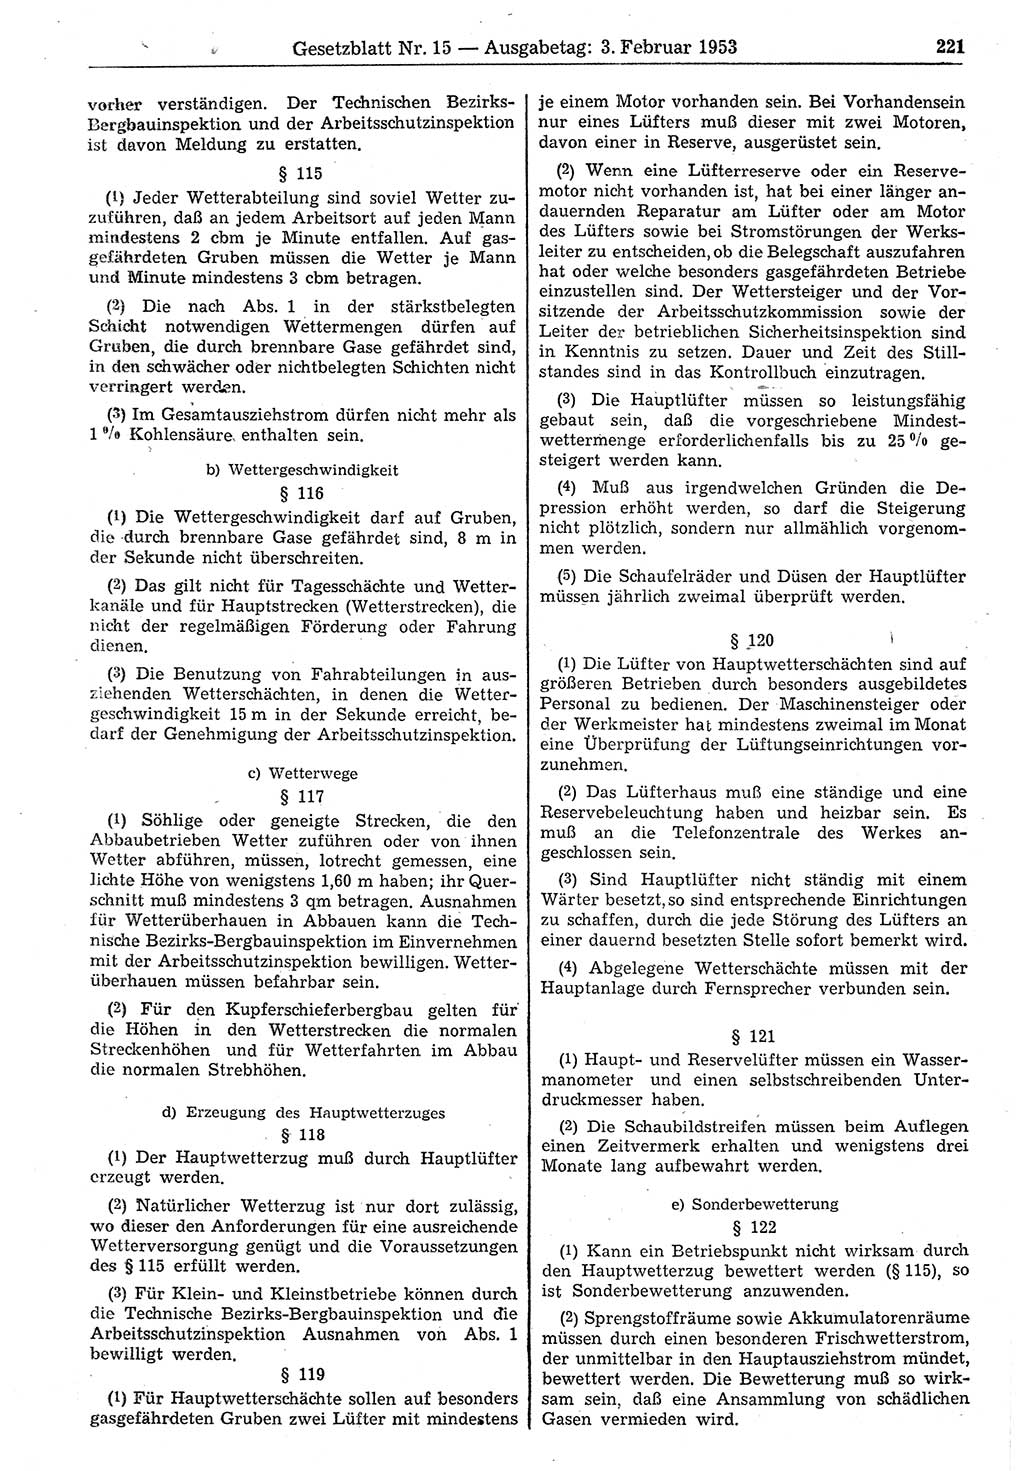 Gesetzblatt (GBl.) der Deutschen Demokratischen Republik (DDR) 1953, Seite 221 (GBl. DDR 1953, S. 221)